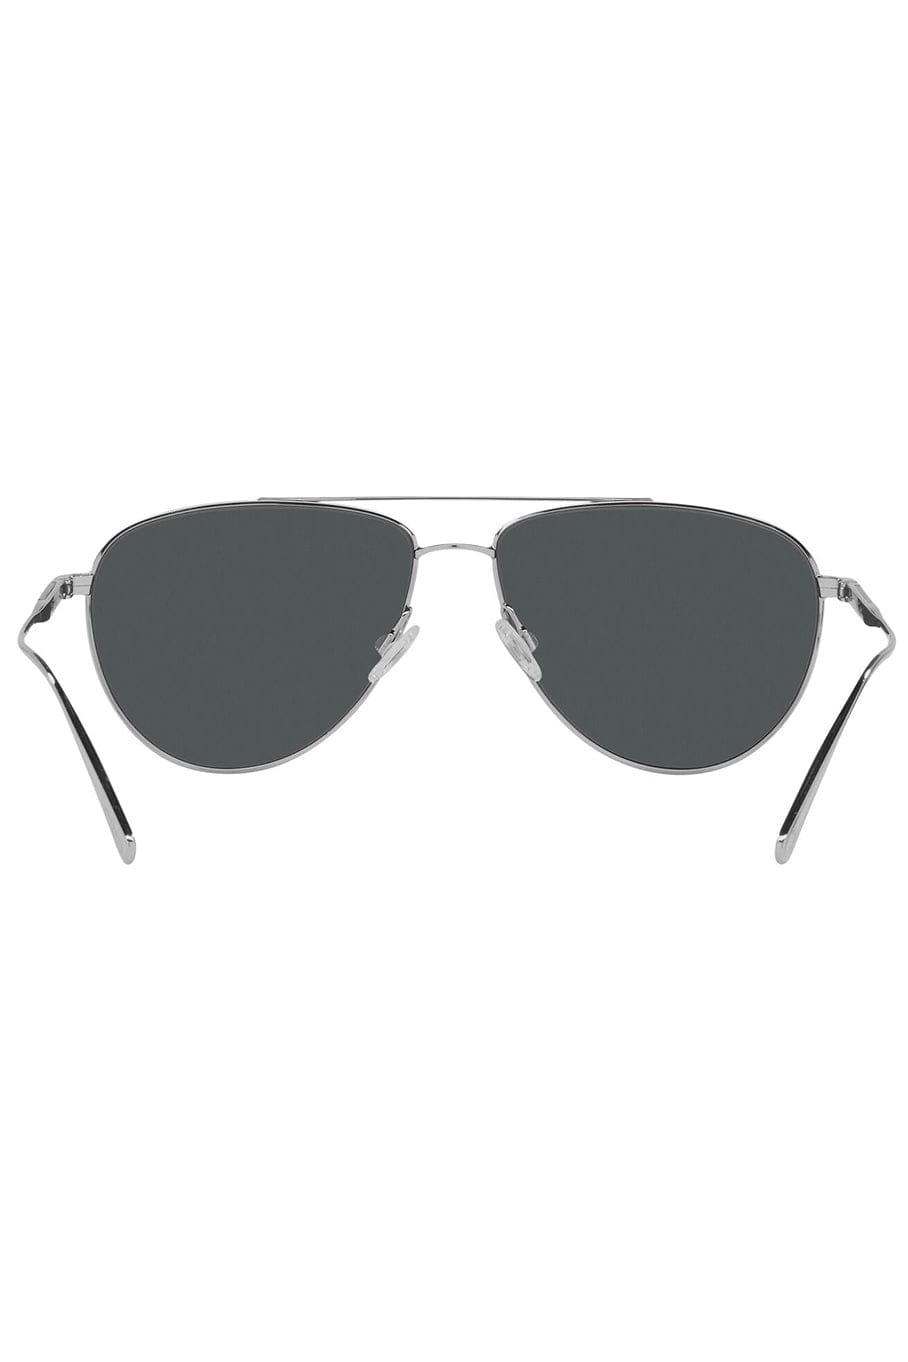 Disoriano Sunglasses - Silver Midnight ACCESSORIESUNGLASSES OLIVER PEOPLES   